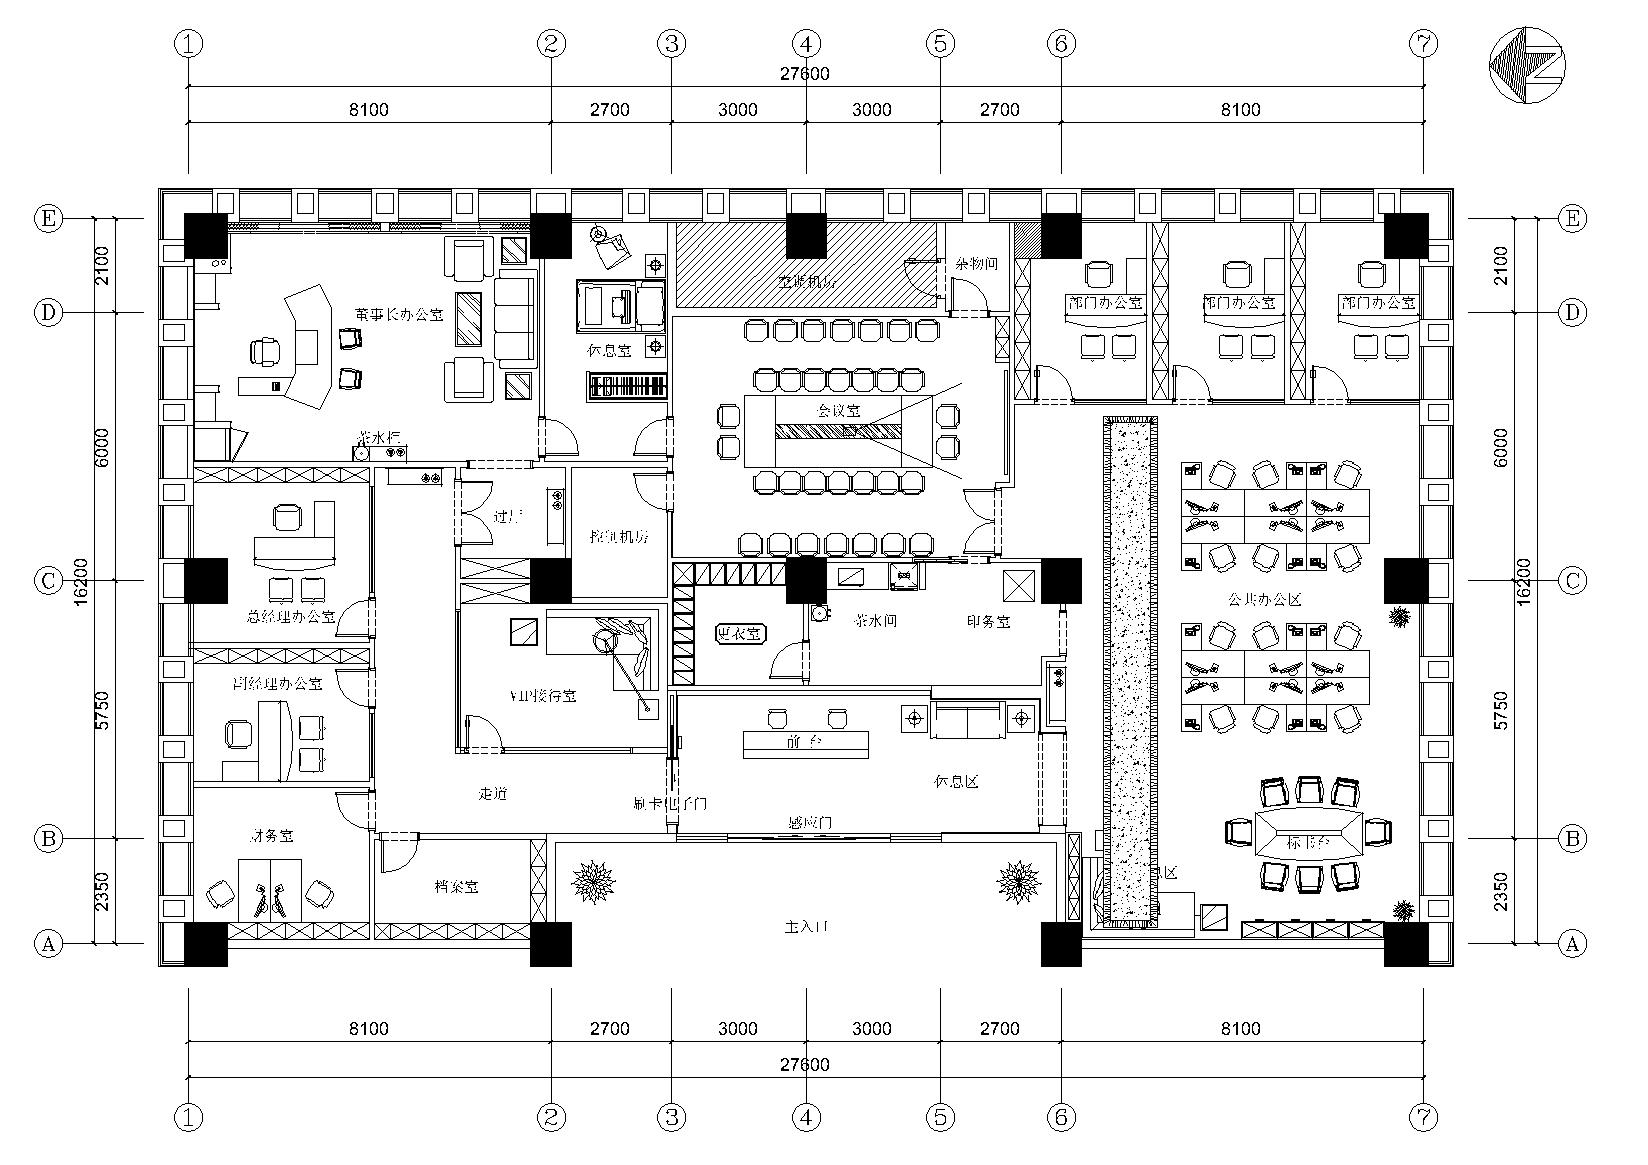 [四川]成都某建筑工程公司办公空间施工图-平面布置图11